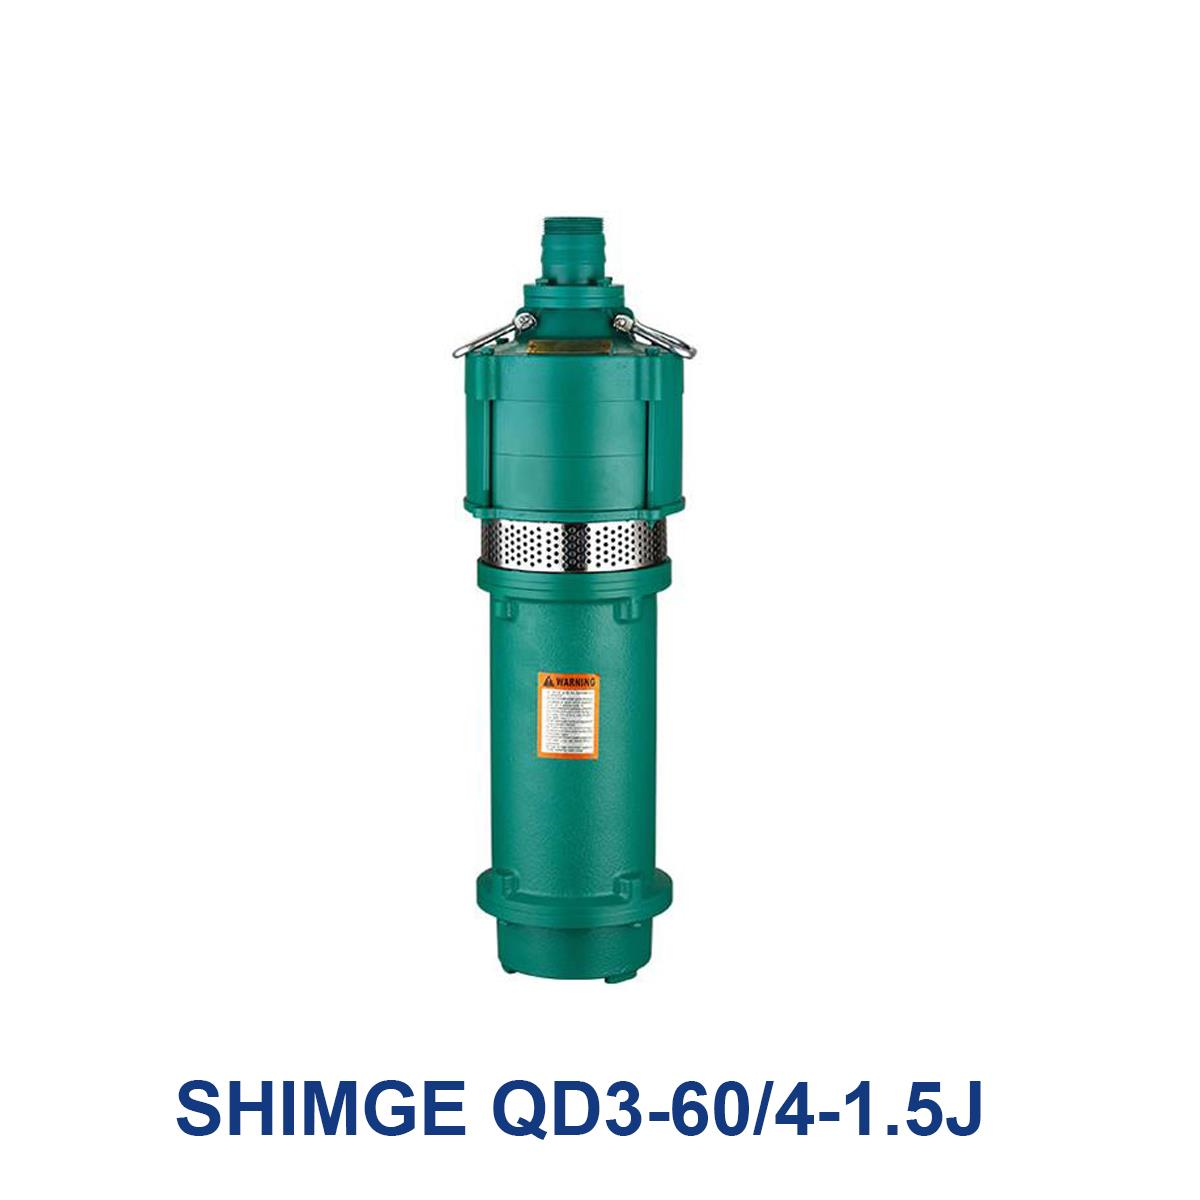 SHIMGE-QD3-60-4-1.5J